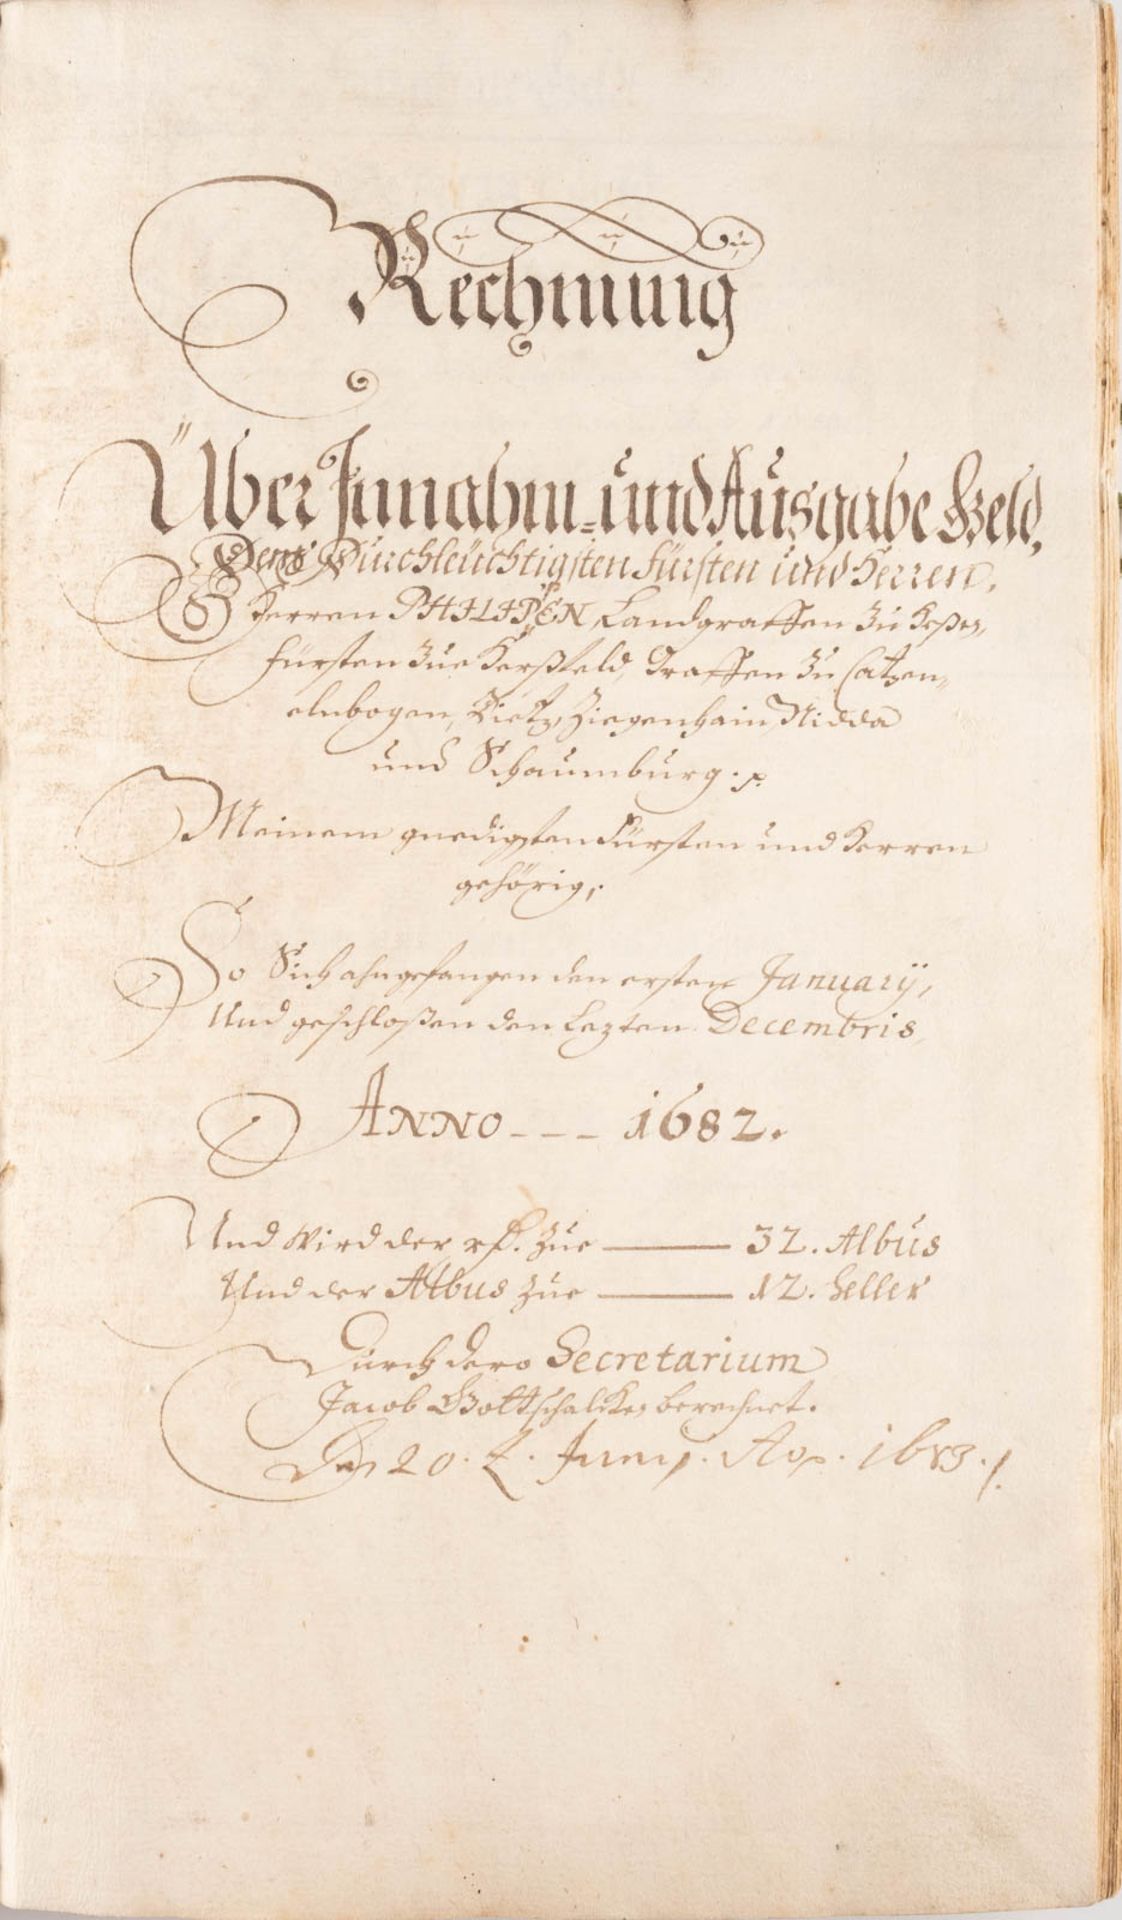 RECHNUNGSBUCH DES LANDGRAFEN ZU HESSEN ZUM JAHR 1682 Deutsch, dat. 20. Juni 1683 In Pergament - Image 3 of 3